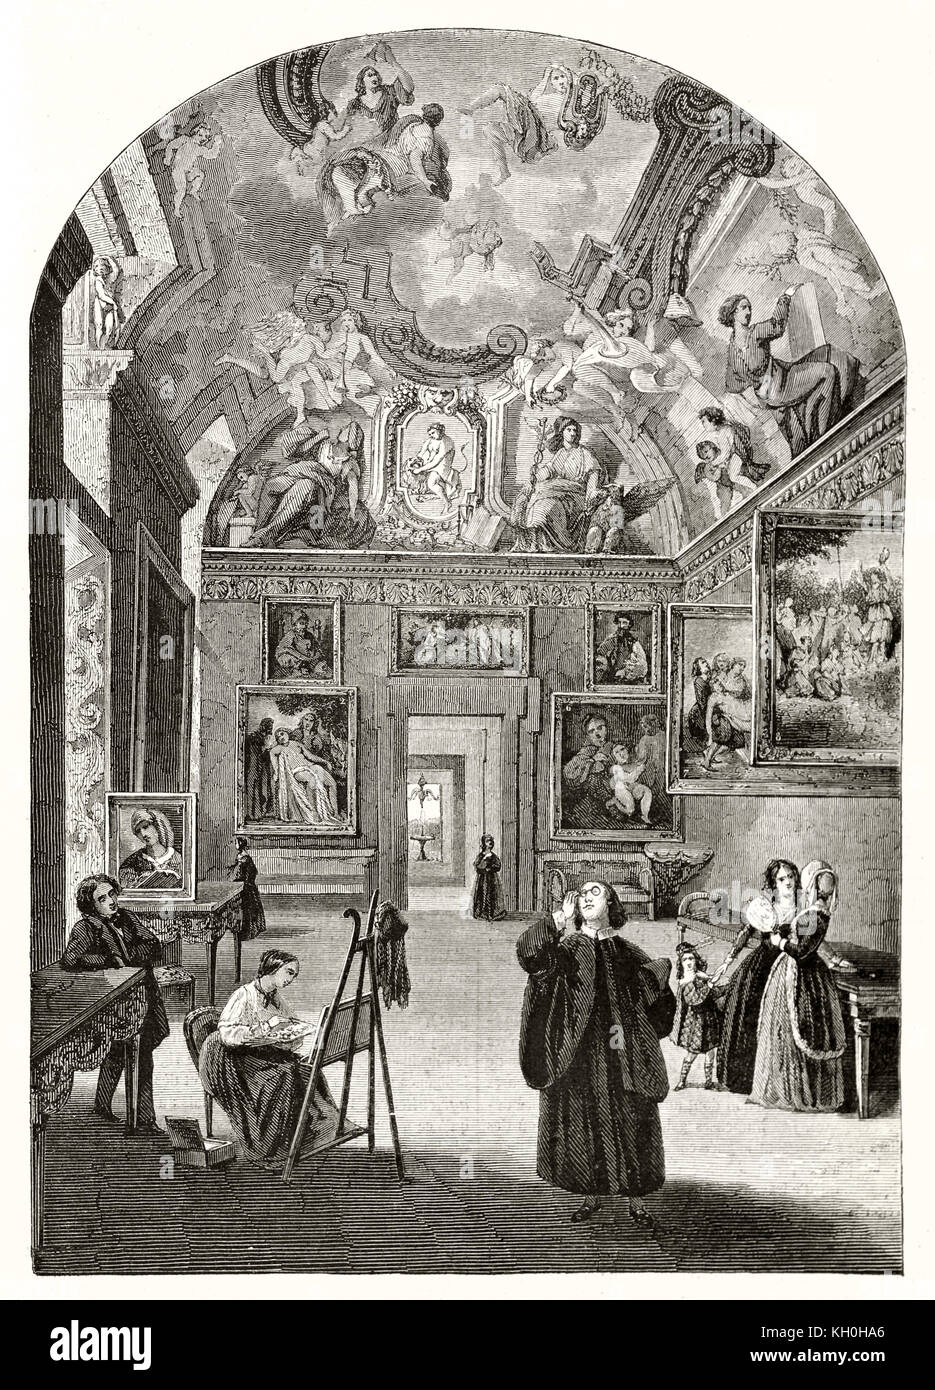 Alte Abbildung: Galleria Borghese, Rom, Italien. Nach Frappas und Freeman, Publ. Auf Magasin Pittoresque, Paris, 1847. Stockfoto